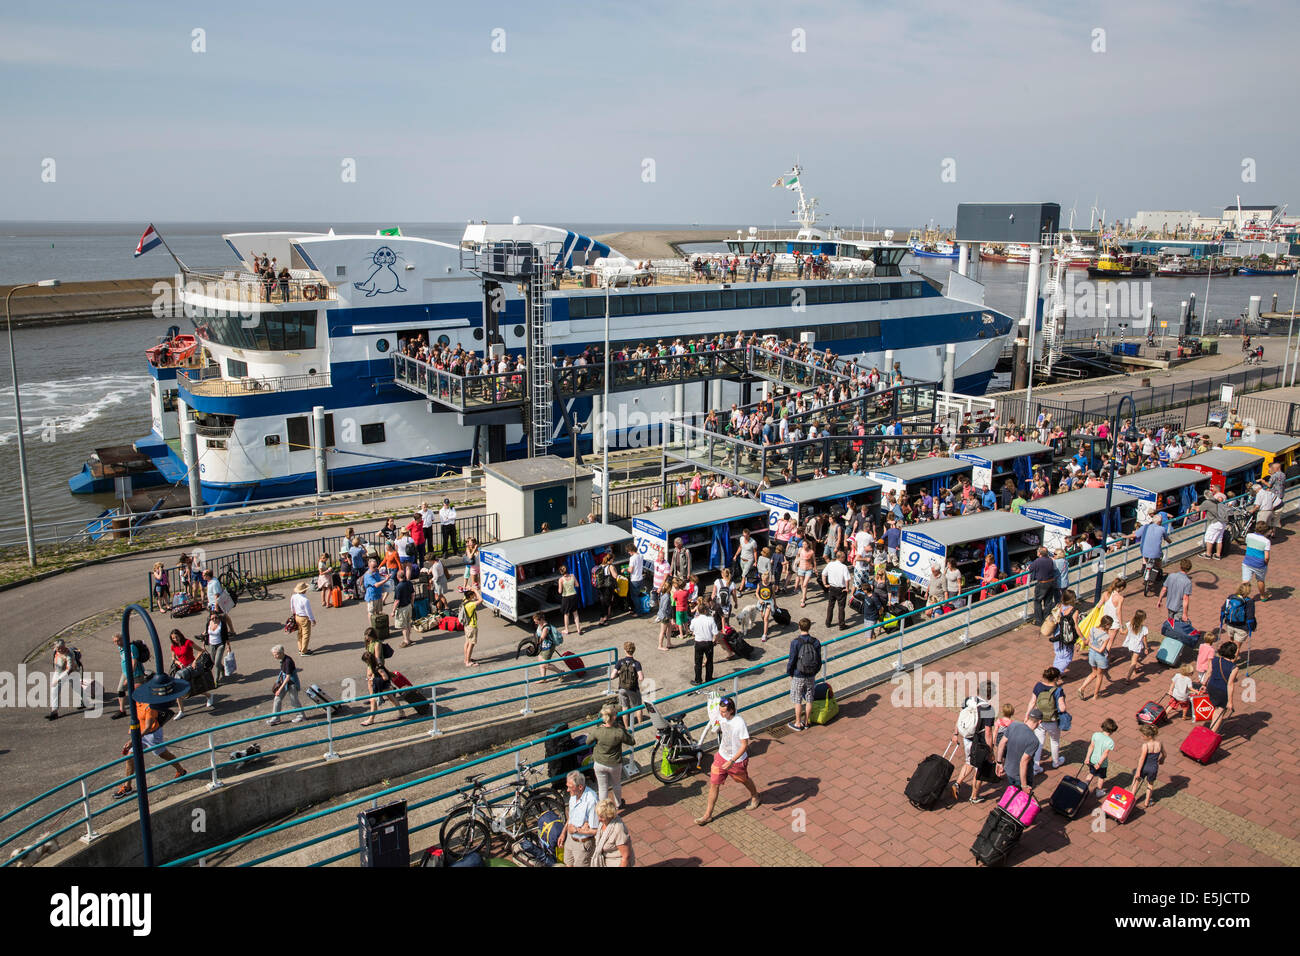 Pays-bas, Harlingen, Port. Les gens de descendre du bateau, venant de l'île de Terschelling Banque D'Images